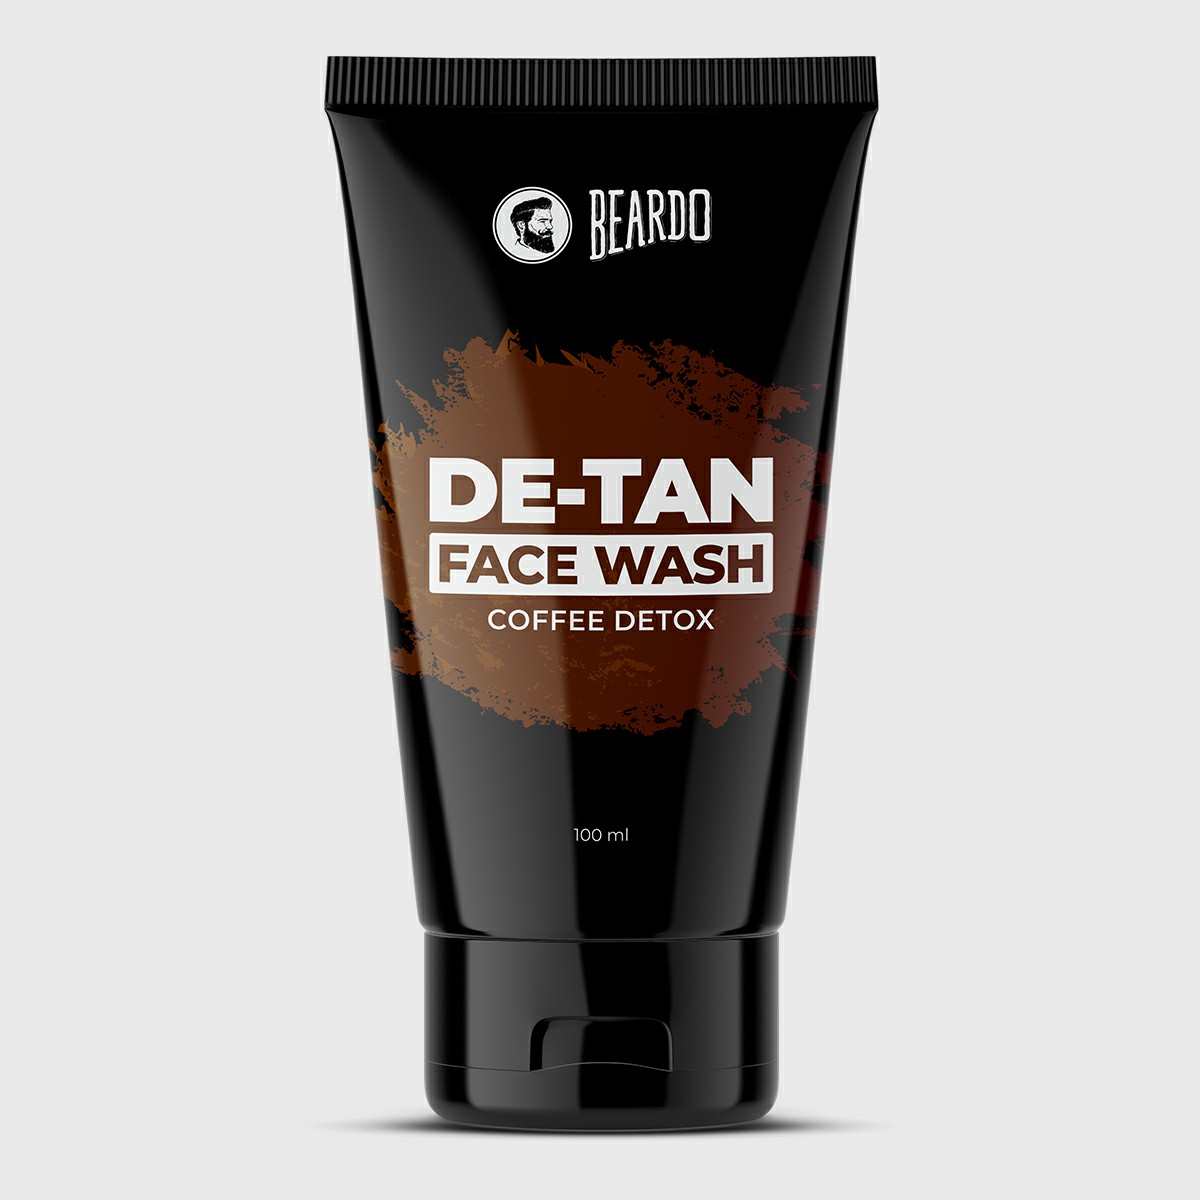 Beardo De-Tan Facewash for Men coupon code